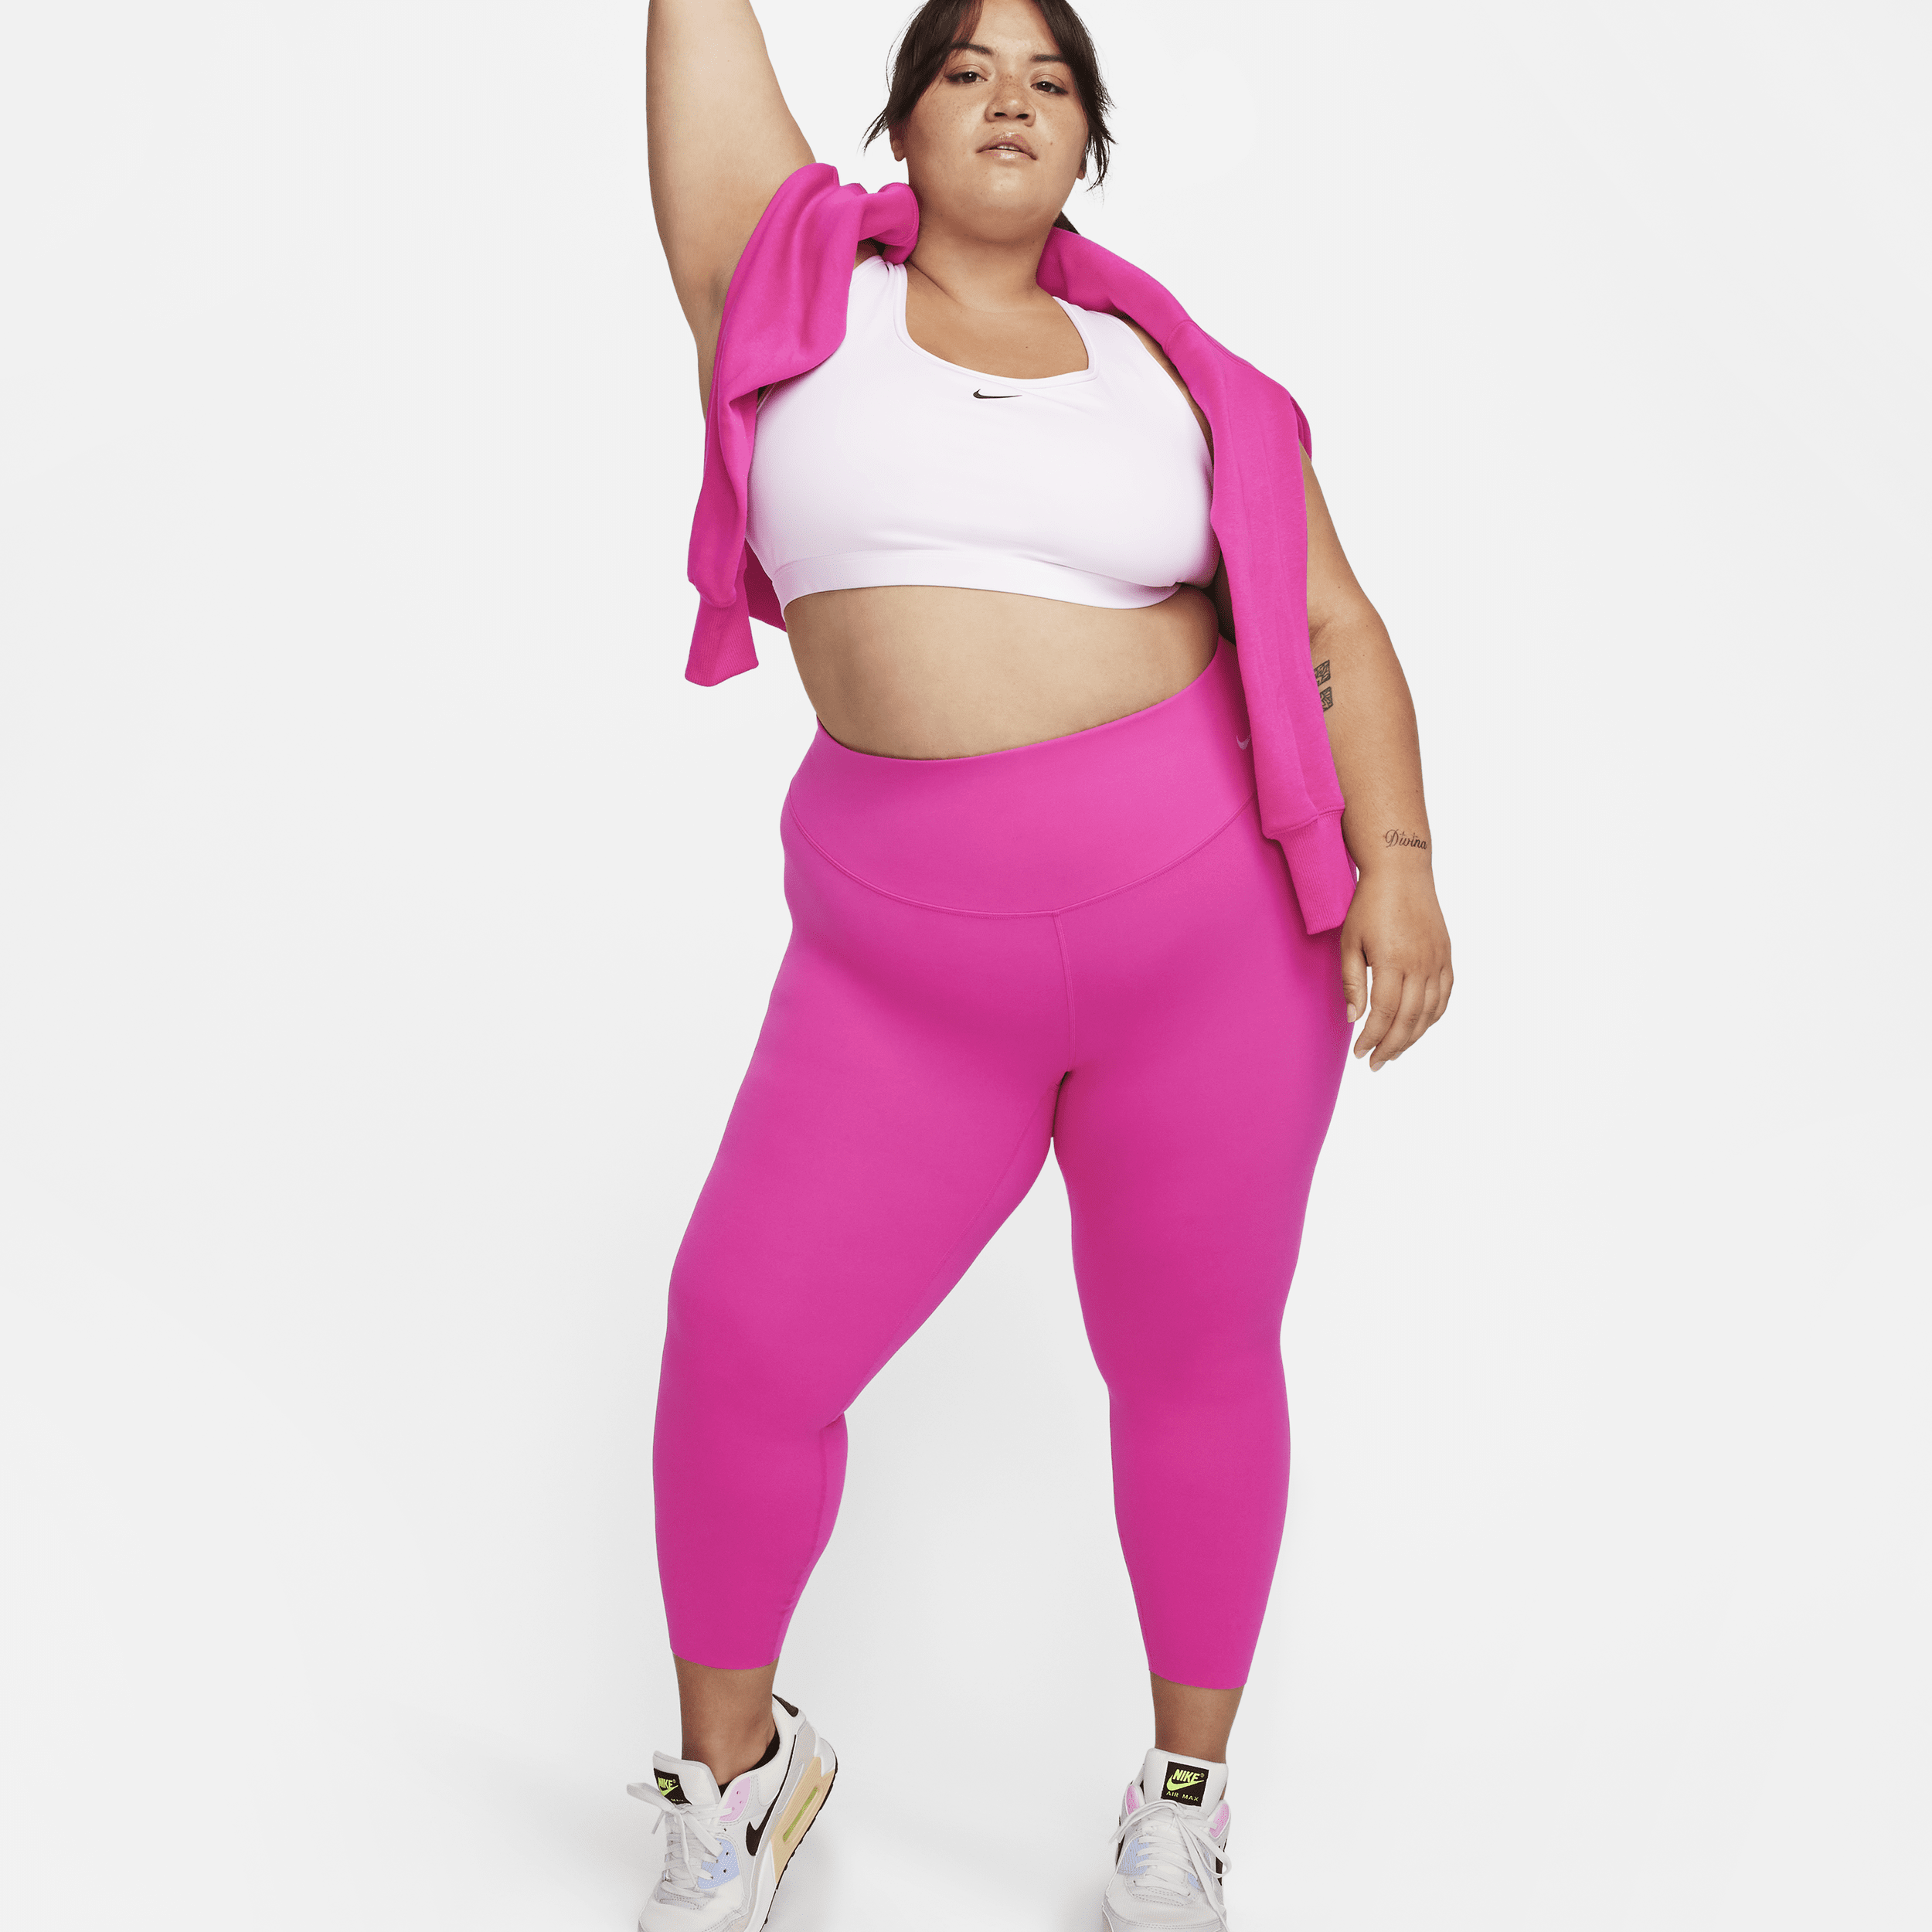 Nike Zenvy Leggings de talle alto y sujeción ligera - Mujer - Rosa